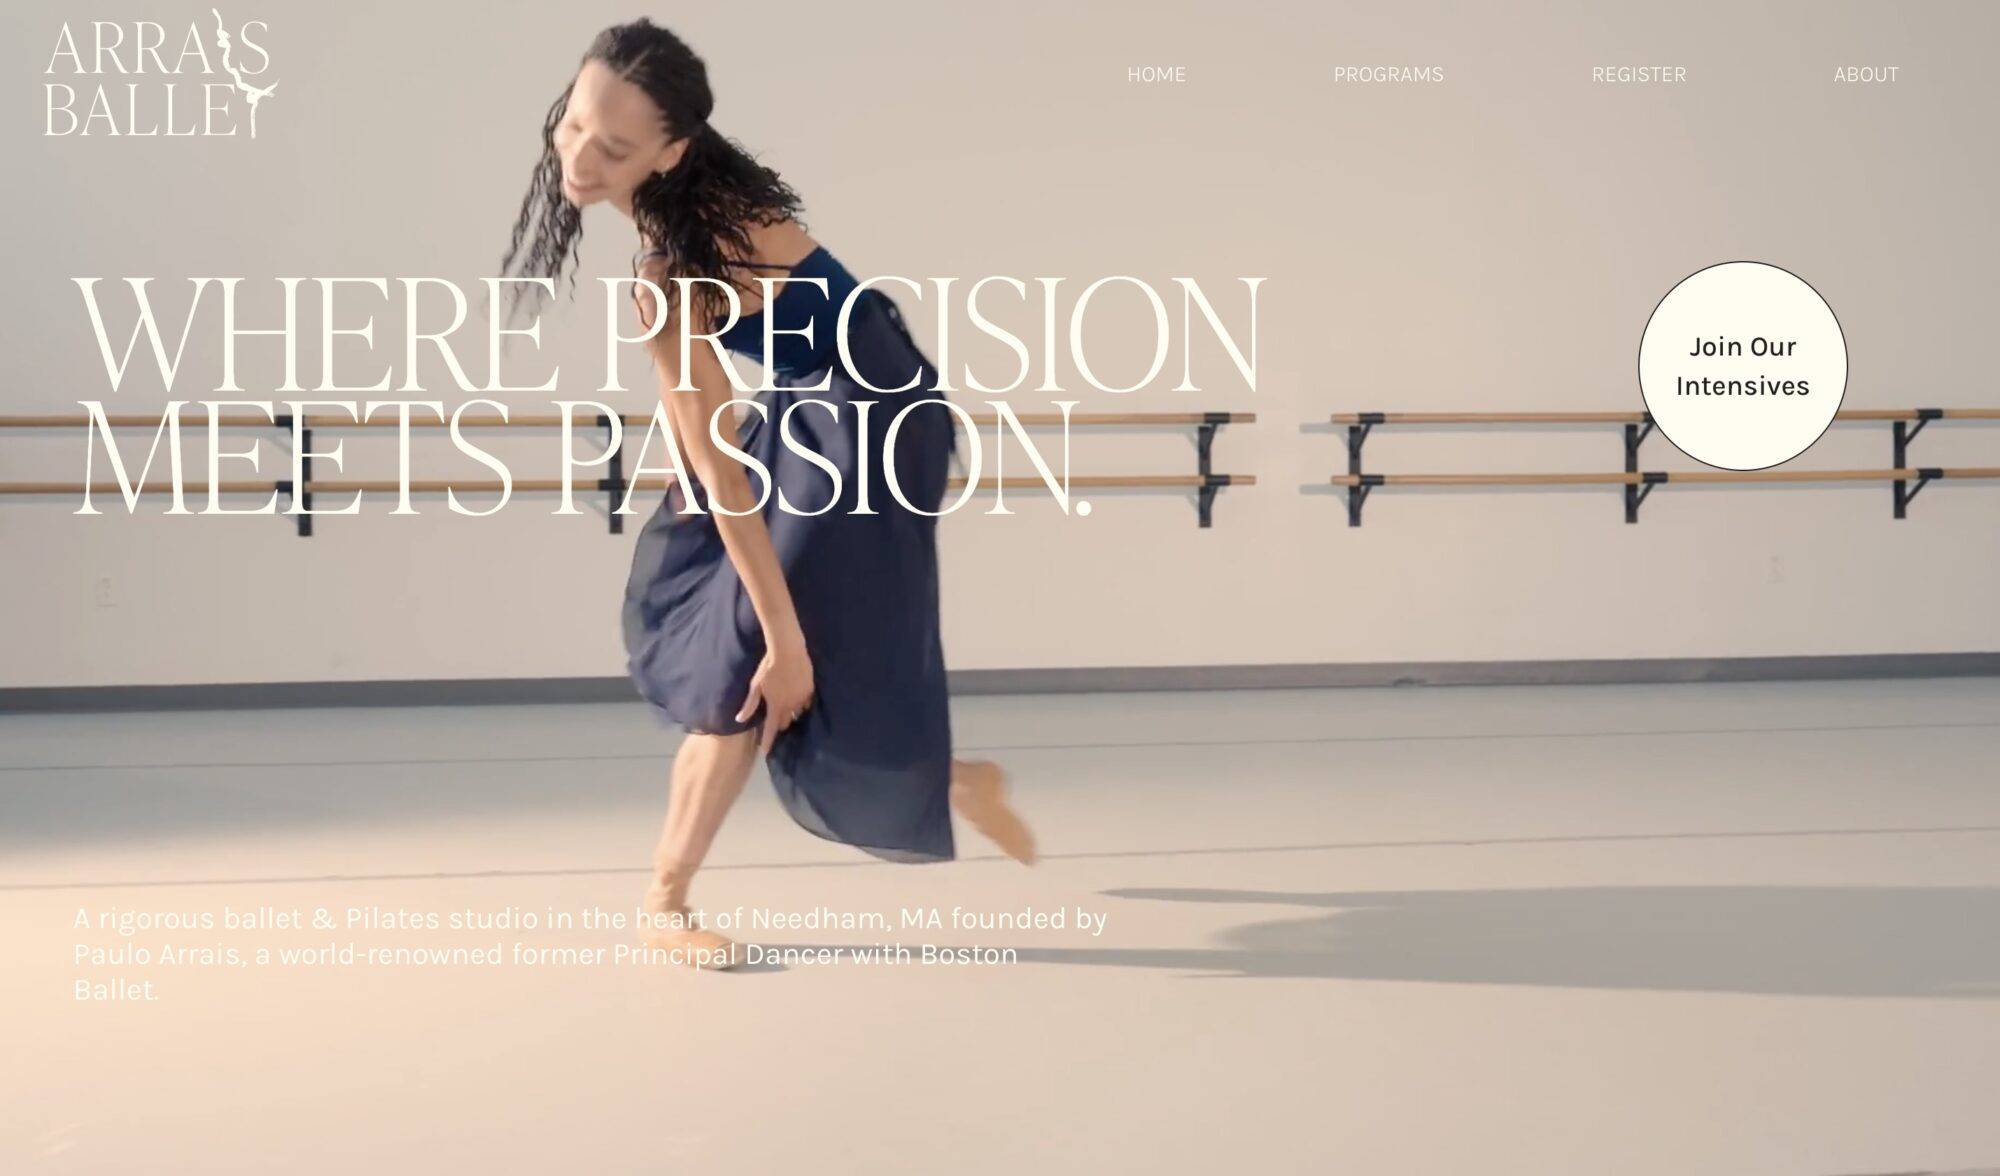 Arrais Ballet website